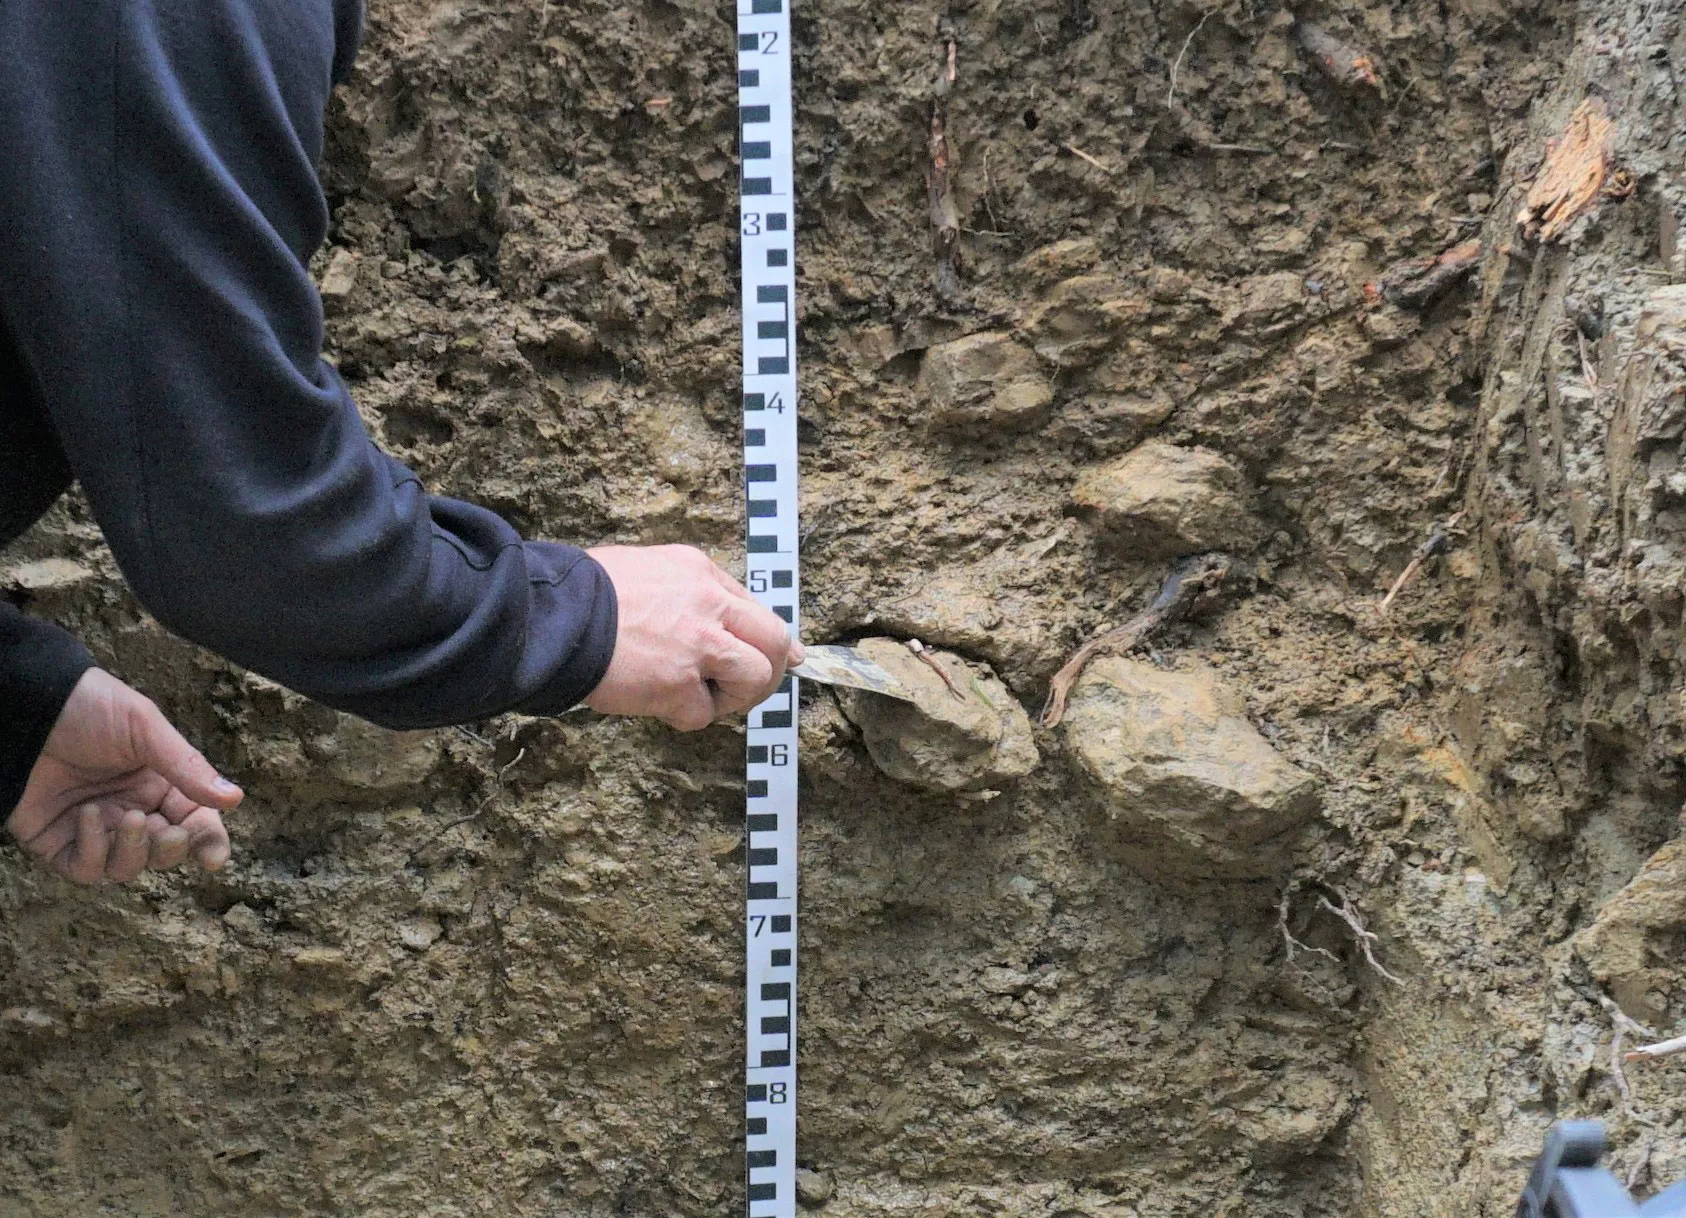 Man blickt auf den Ausschnitt einer grauen Bodenprofilwand. In der Mitte ist ein Maßband angebracht. Eine Person untersucht mit einem Spachtel die in der Mitte der Wand herausragenden hellen Steine.